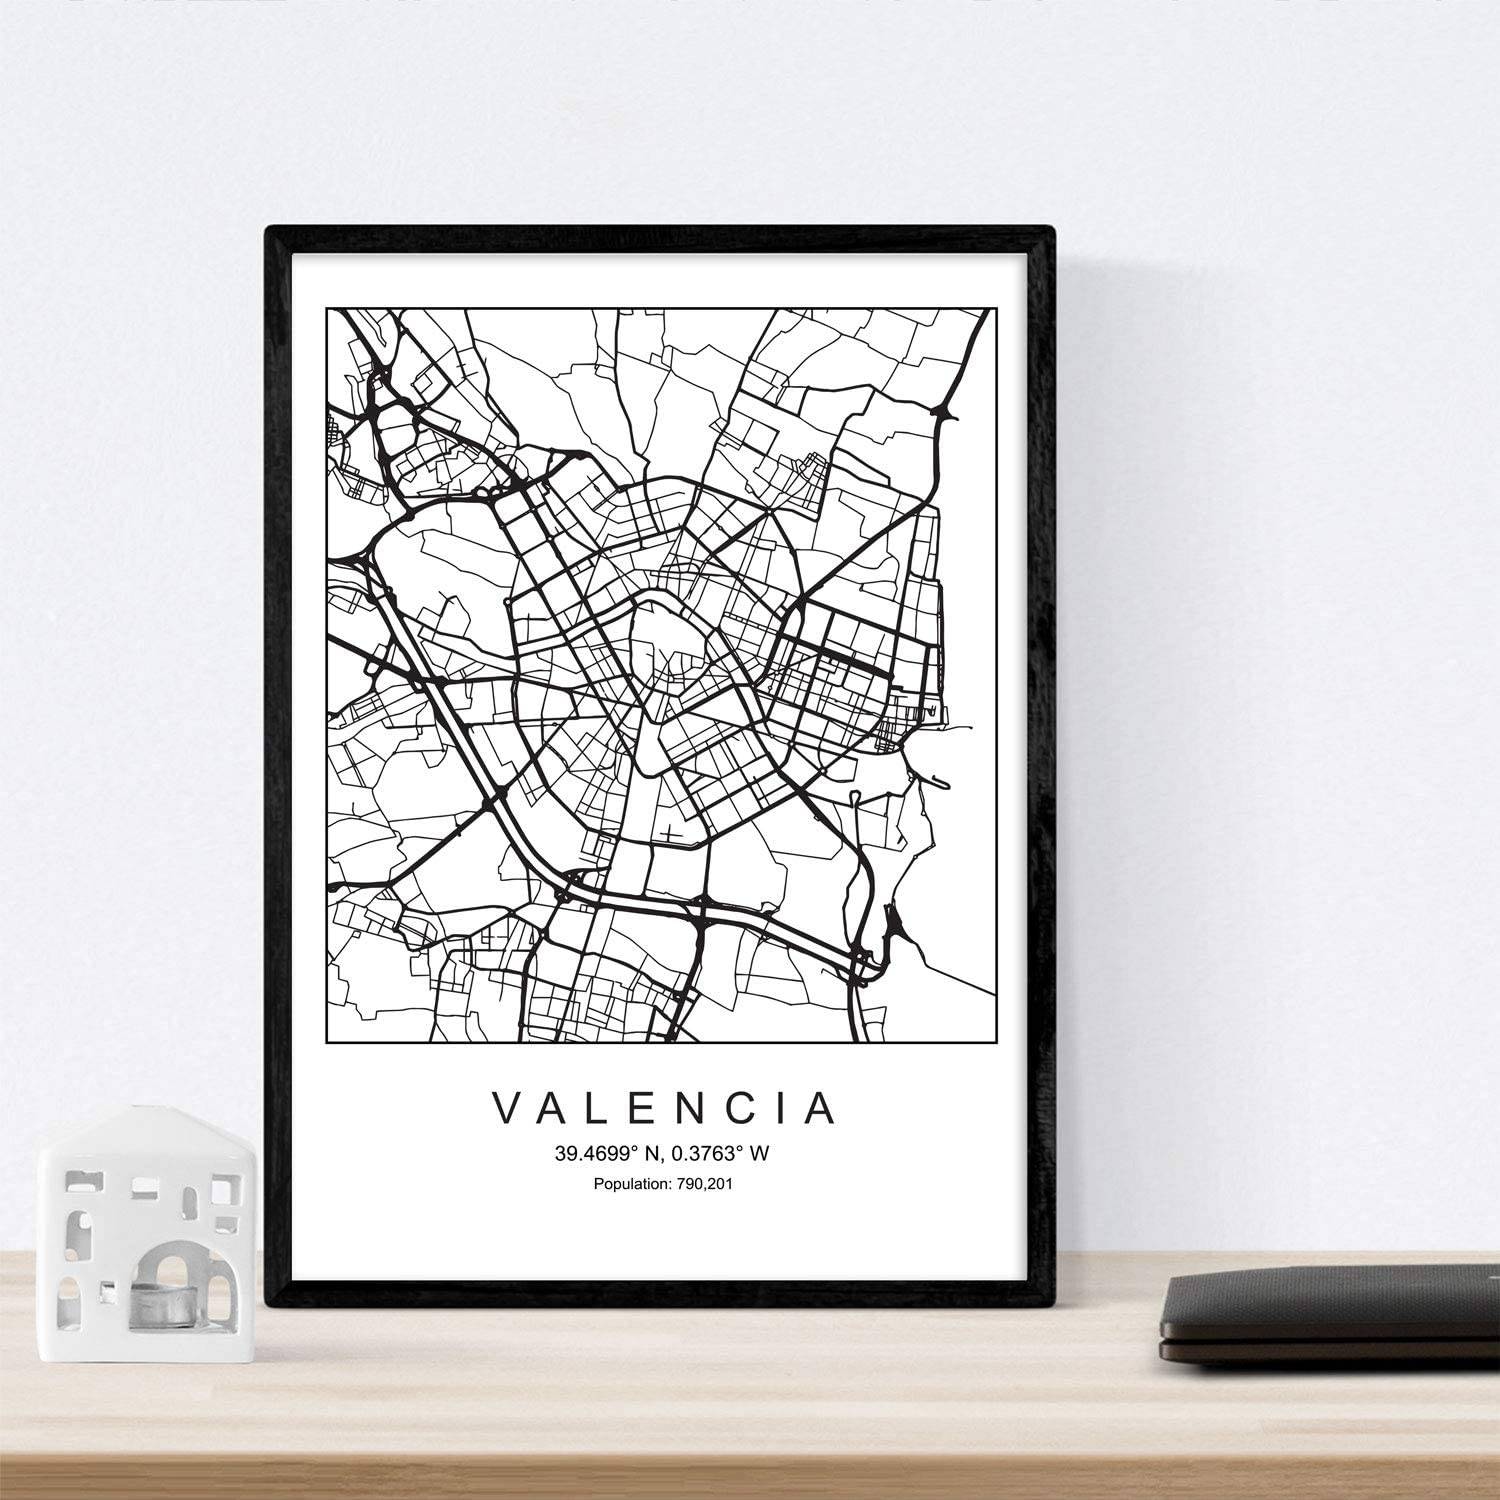 Lámina decorativa con el mapa de Valencia de Amazon.